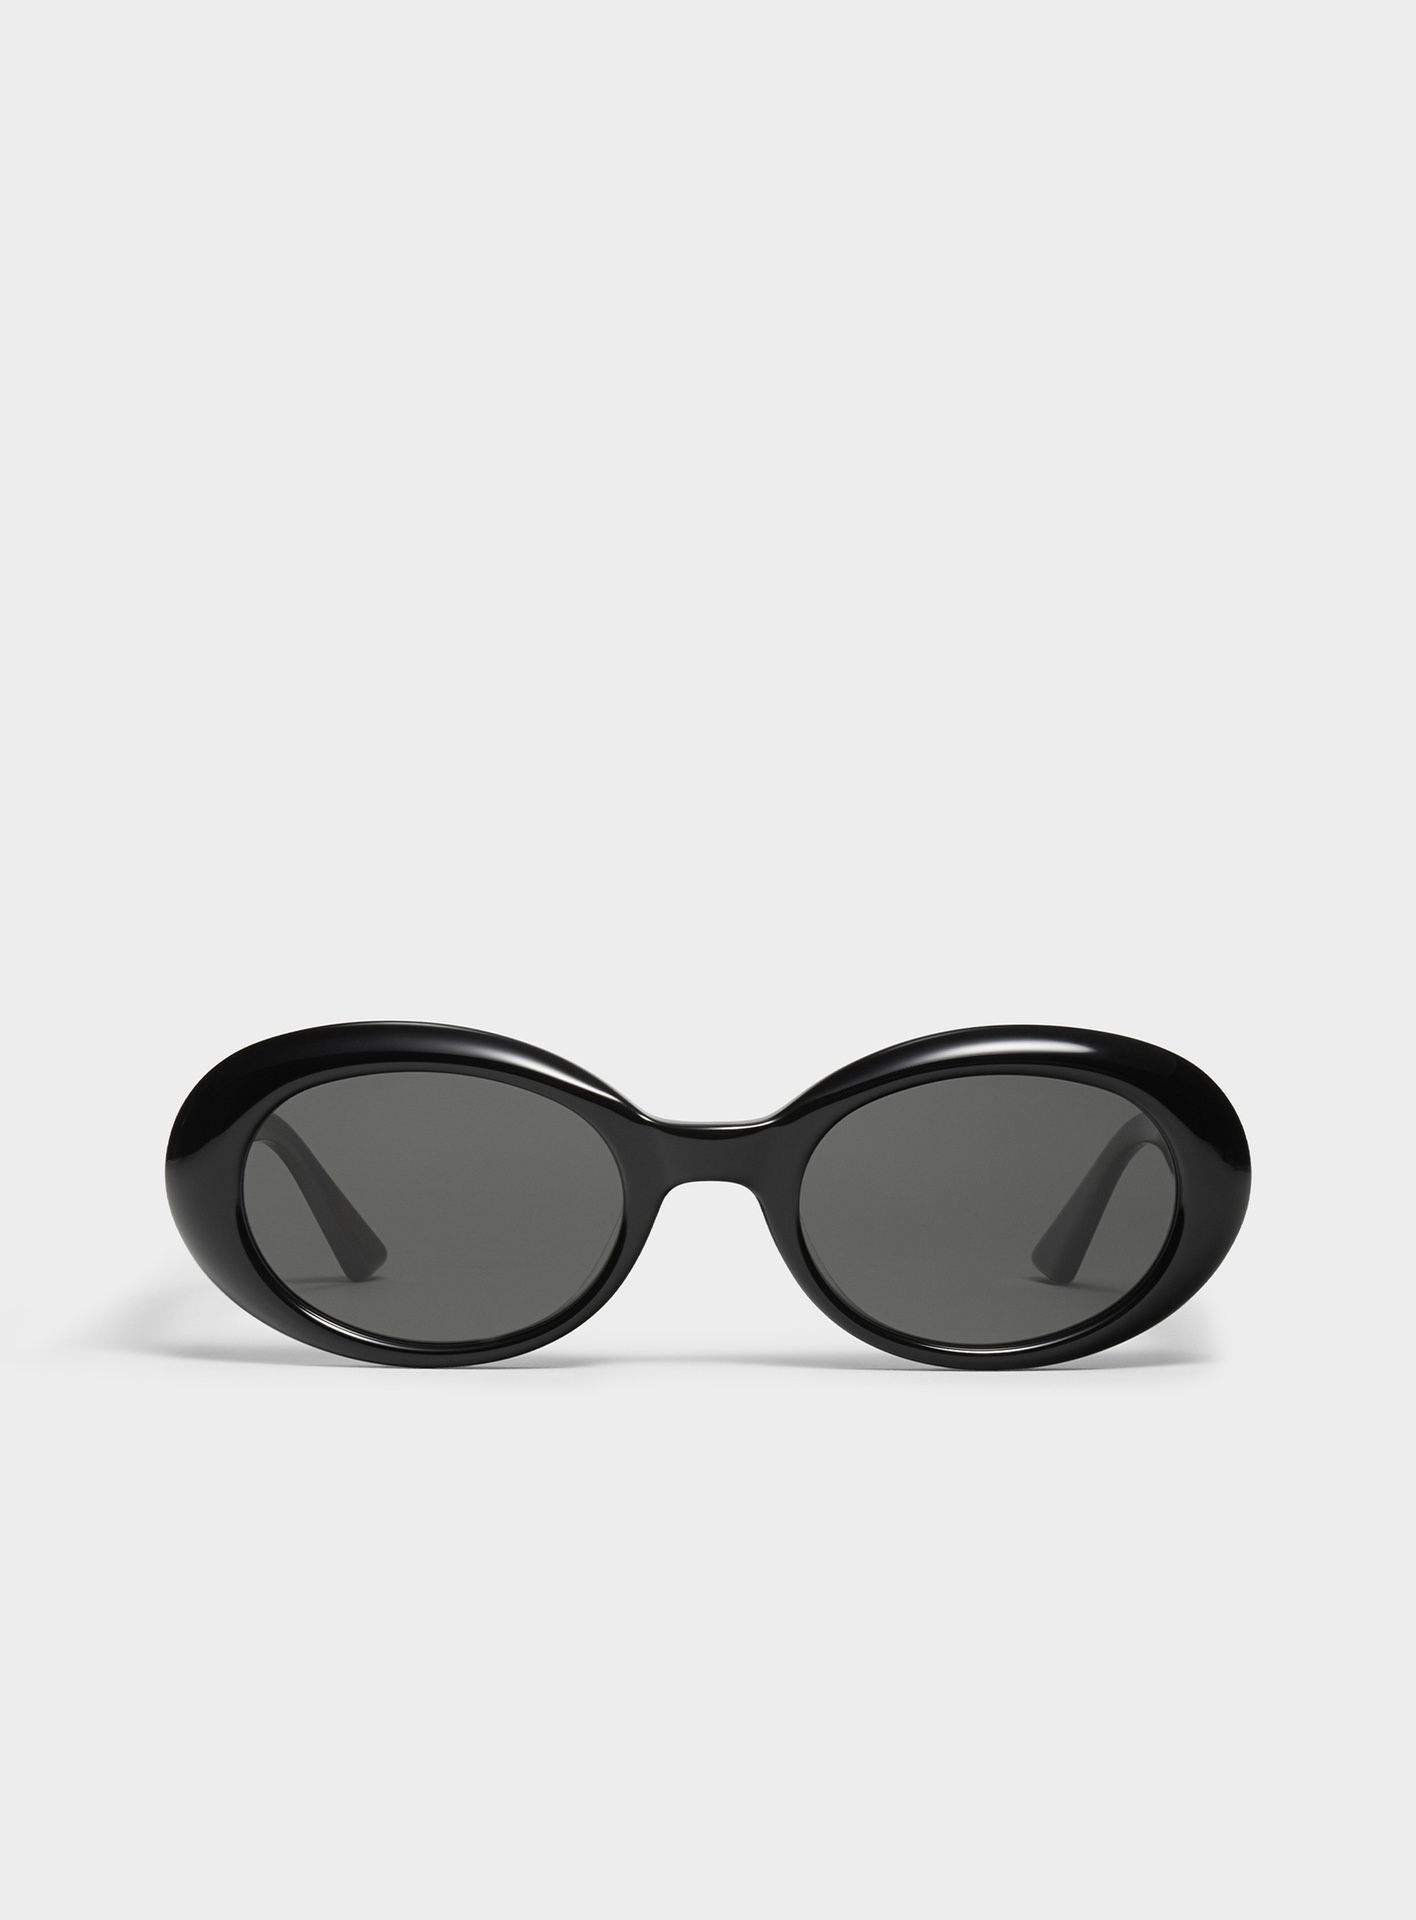 Nouvelles lunettes de soleil rondes hommes designer métal rétro lunettes de soleil style de mode carré sans cadre UV 400 lentille protection extérieure